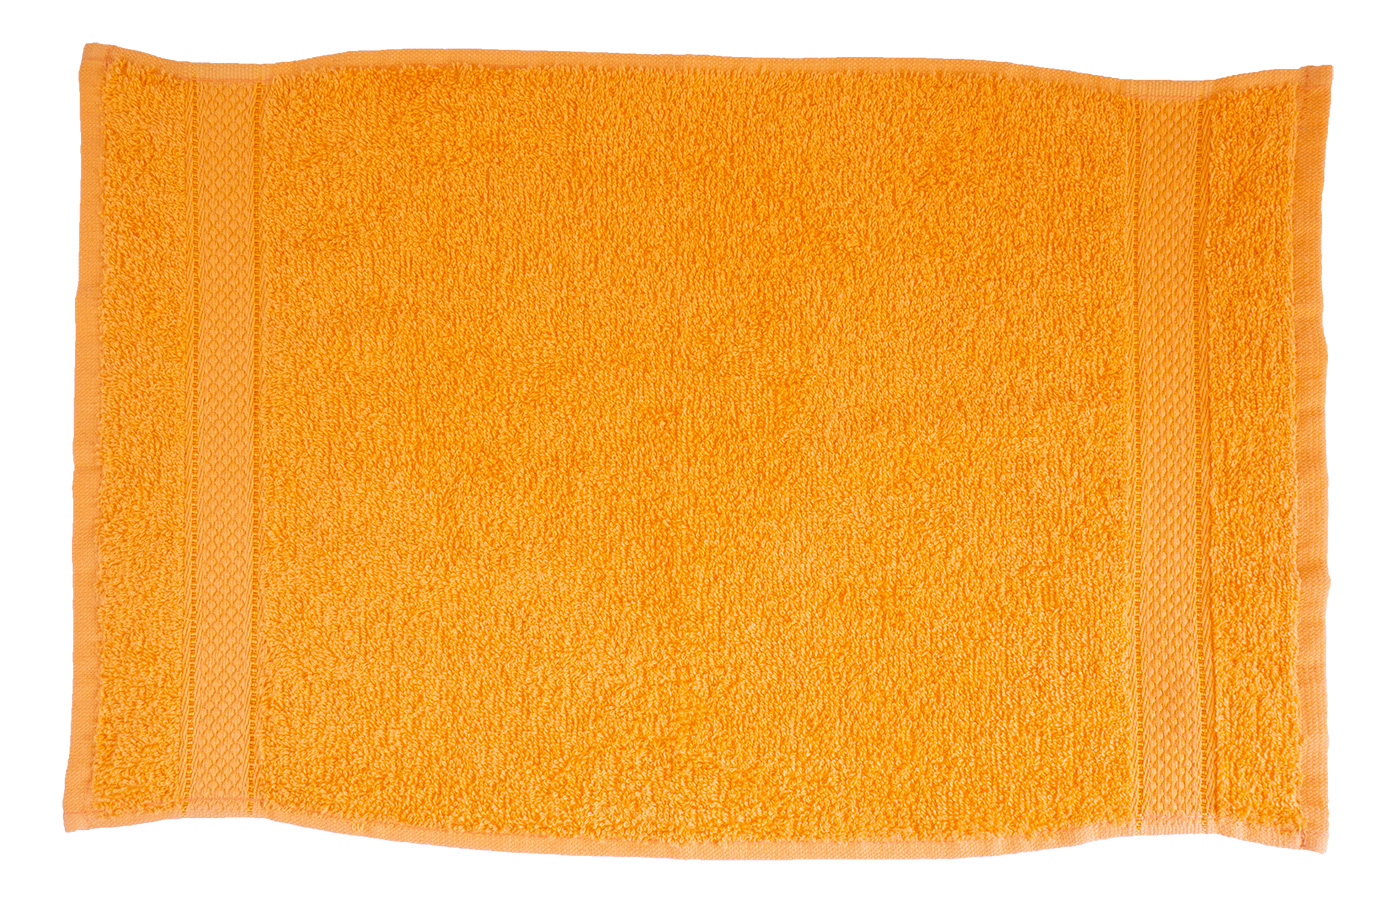 Narancsárga törülköző 30x50 Bordűrös